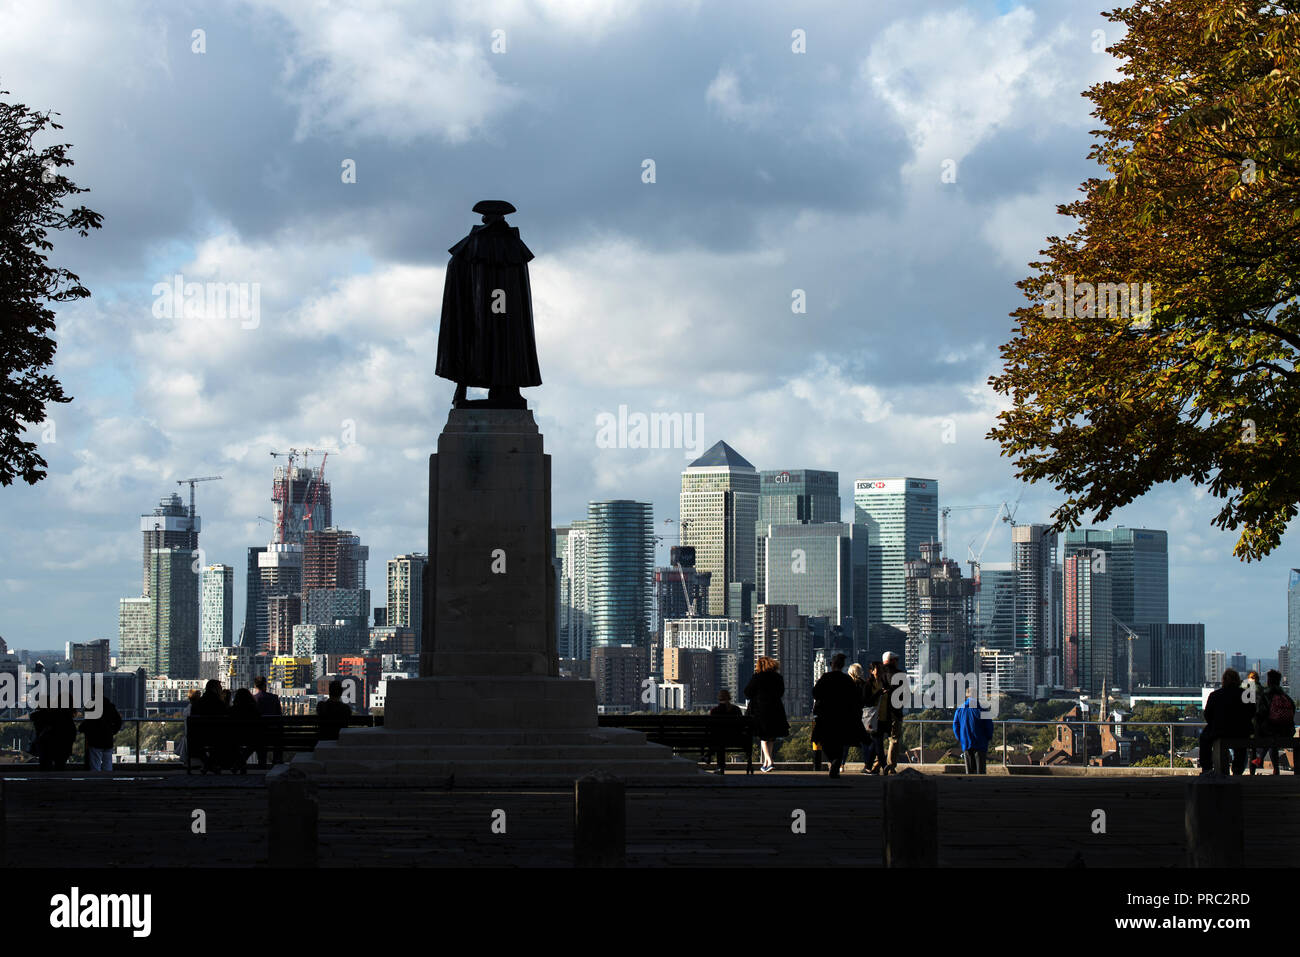 London Panorama depuis le Parc de Greenwich, Angleterre Royaume-uni. 22 septembre 2018 Statue du général James Wolfe face aux 20e et 21e cntury c Canary Wharf Banque D'Images